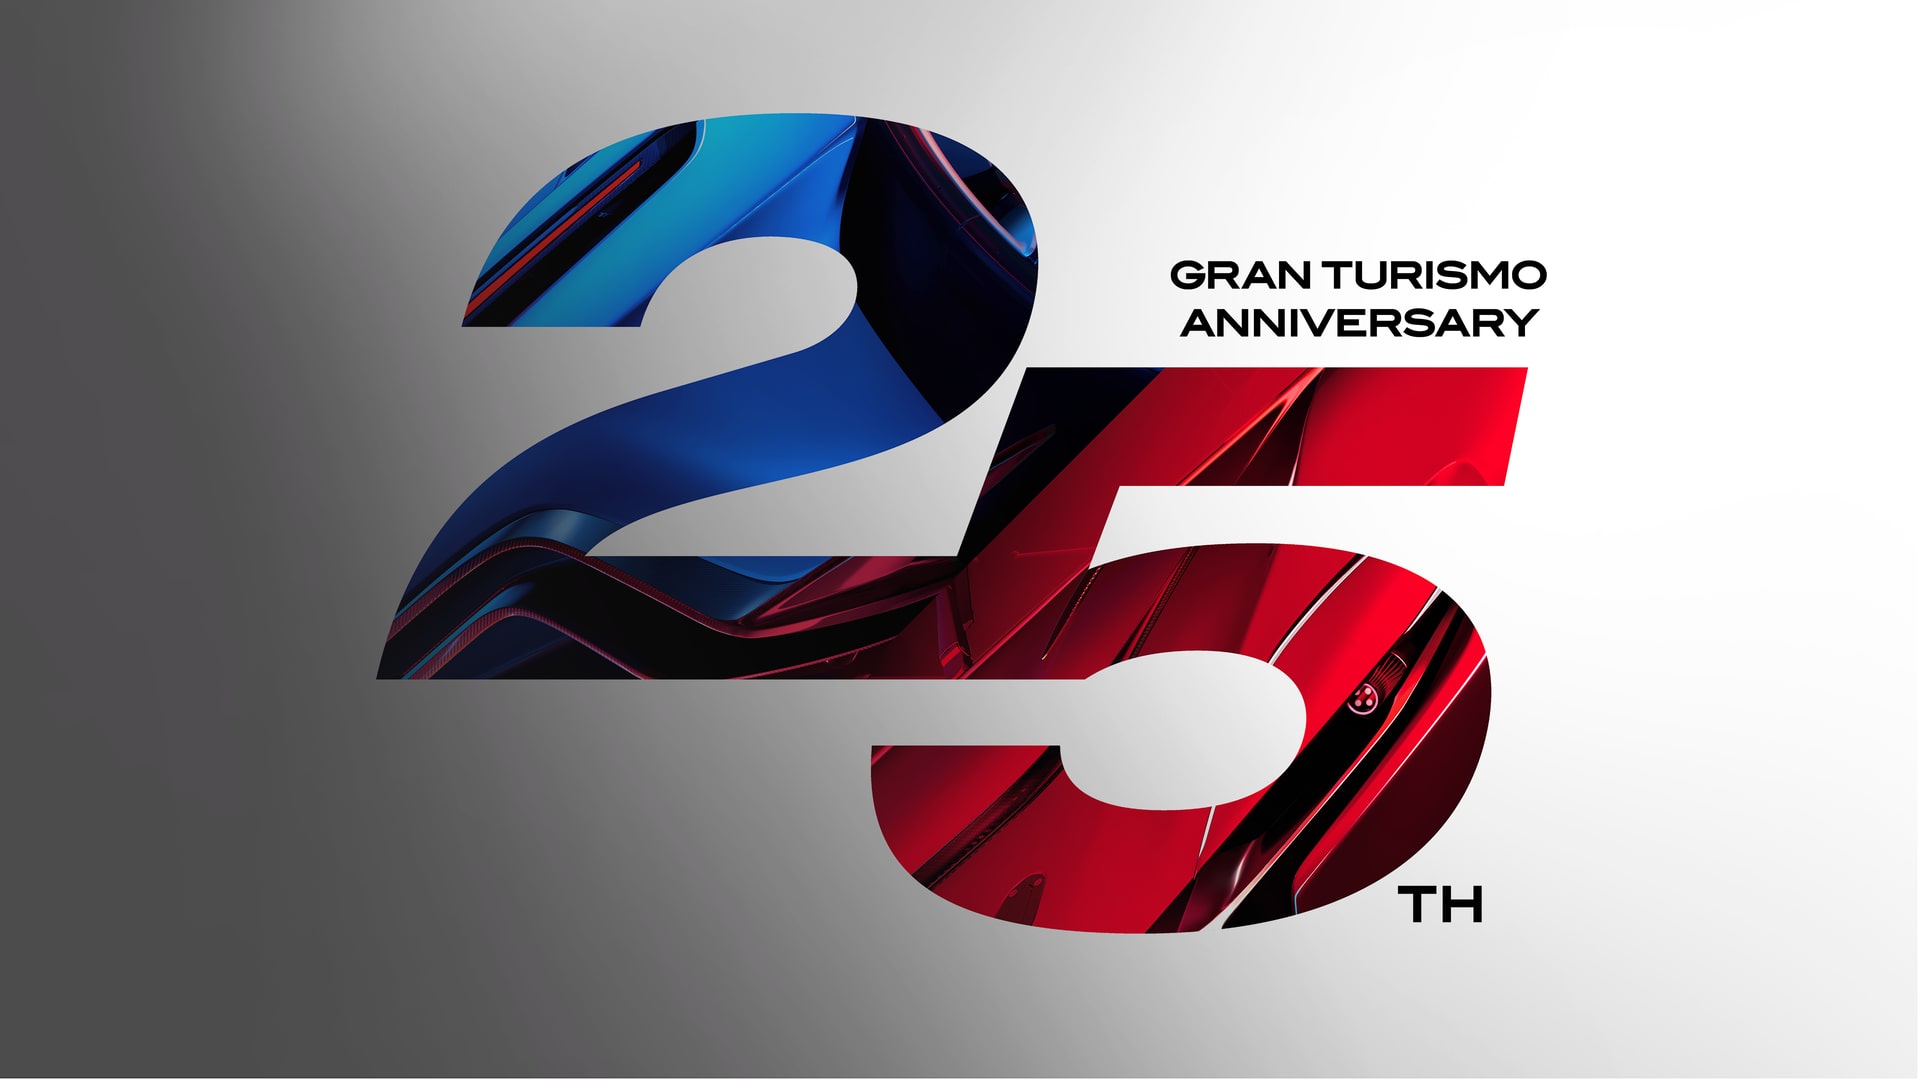 Gran Turismo® 7 25th Anniversary Digital Deluxe Edition